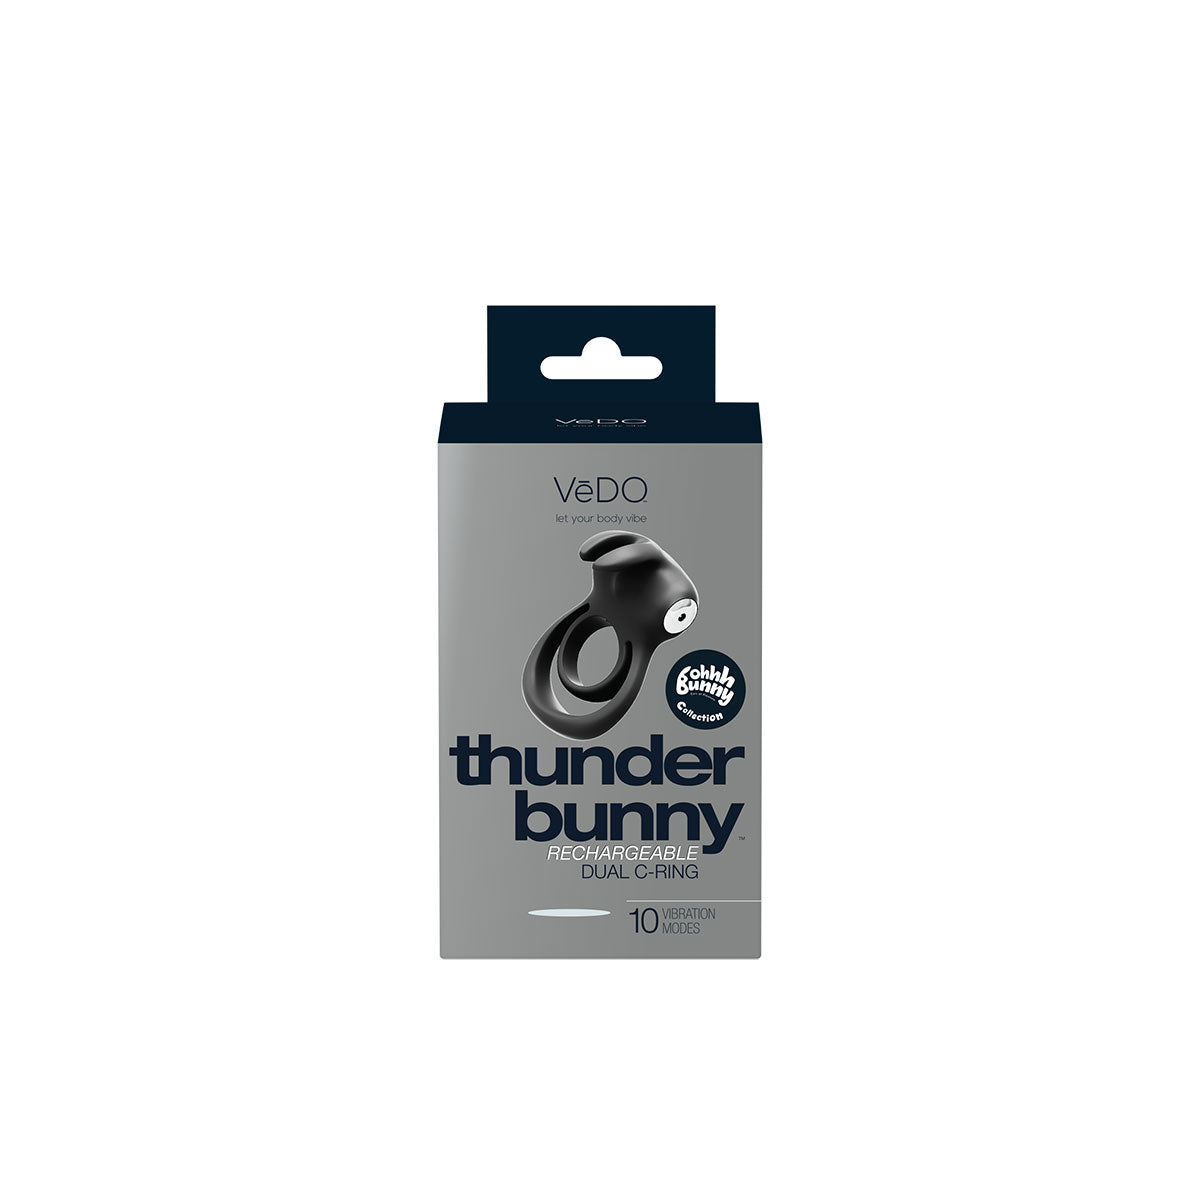 VeDO Thunder Bunny Vibrating Dual C-Ring - Black